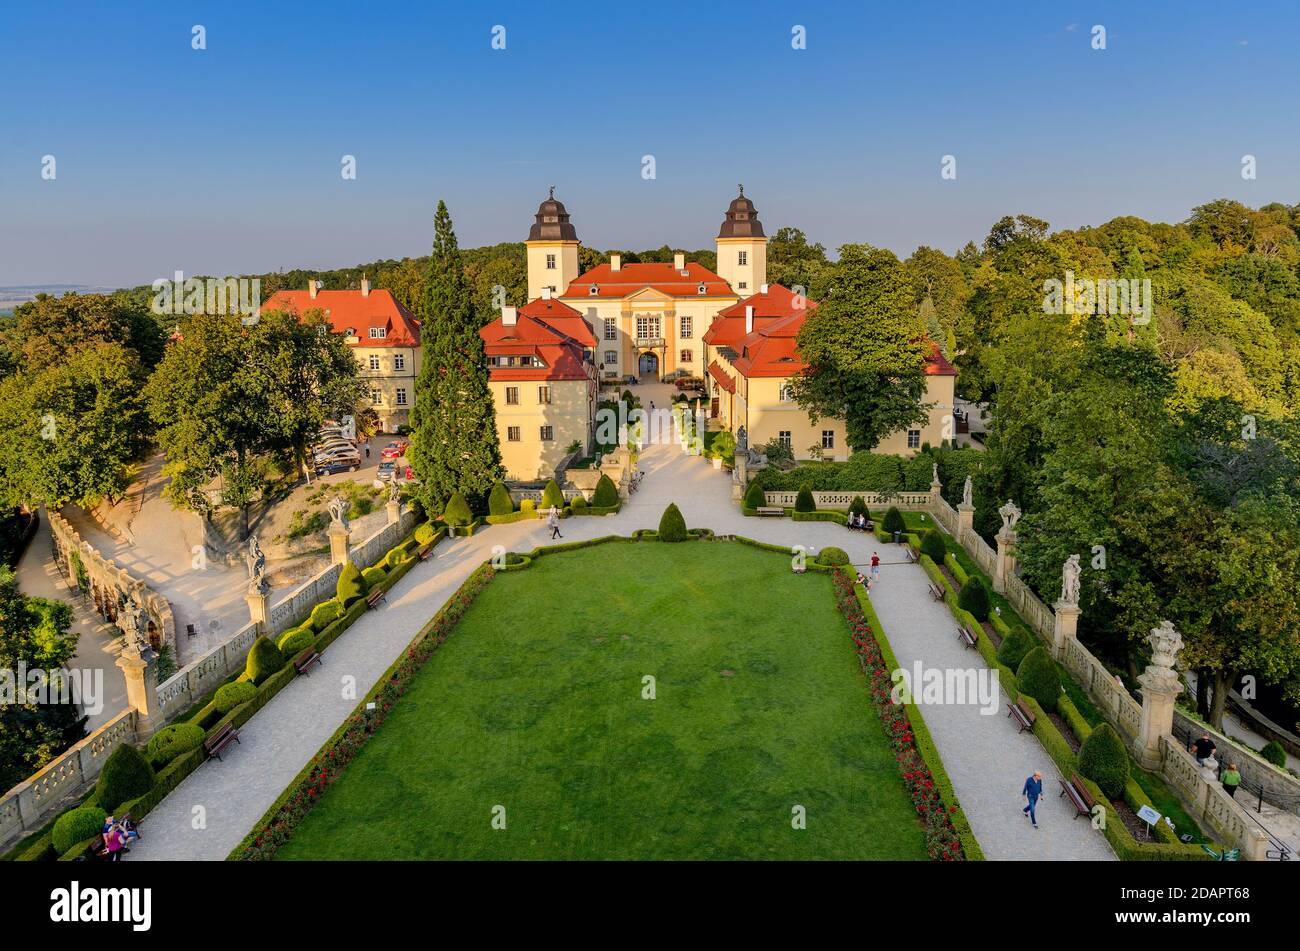 Ksiaz Castle (ger.: Fürstenstein). Lower Silesia province, Poland. Stock Photo